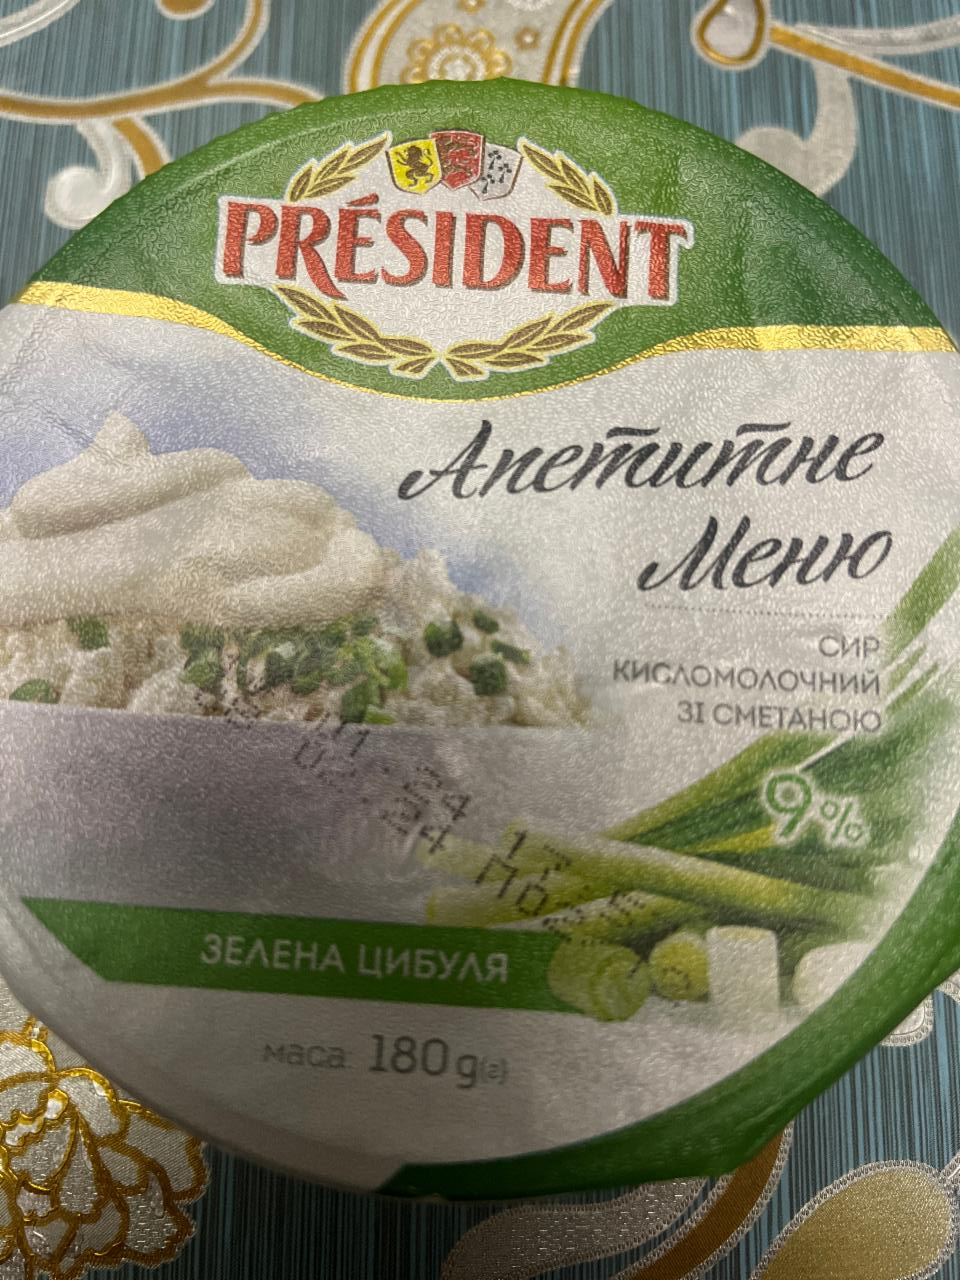 Фото - Сир кисломолочний 9% зі сметаною та наповнювачем Зелена цибуля Апетитне Меню President